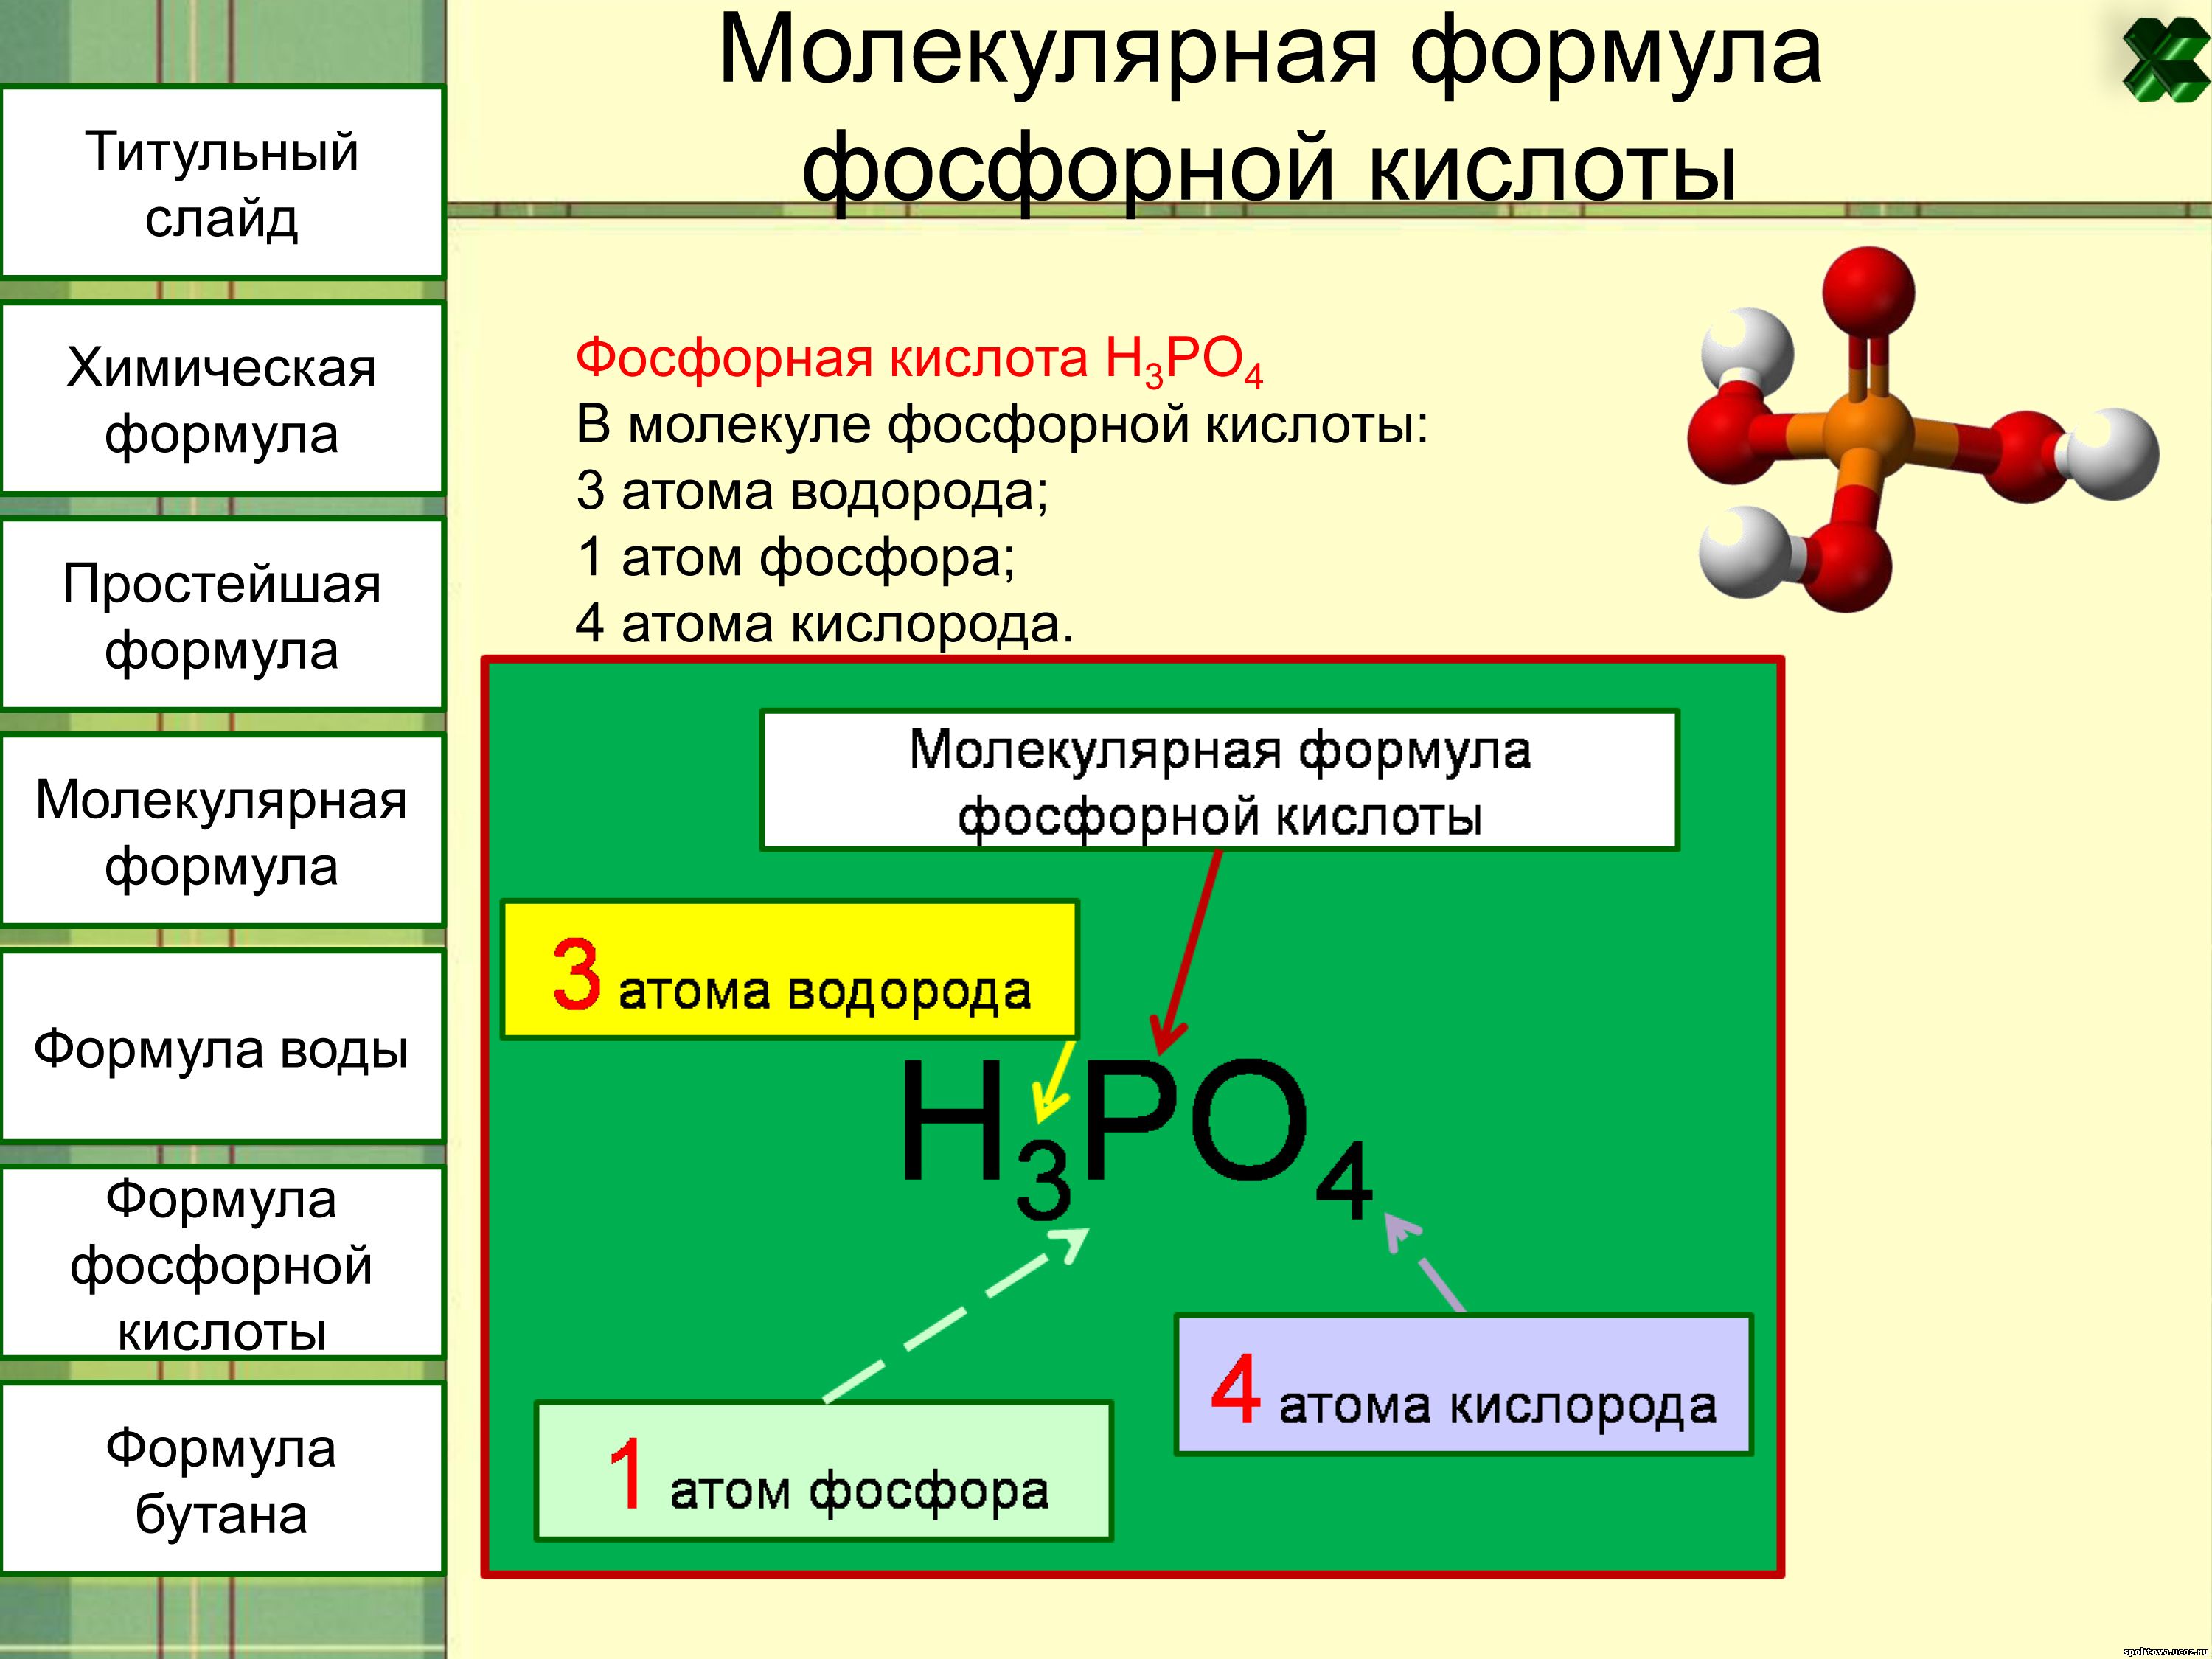 Ортофосфат кислота формула. Химическая формула структурная фосфор. Хим формула фосфорной кислоты. Фосфорная кислота формула химическая формула. Структура формулы фосфорной кислоты.